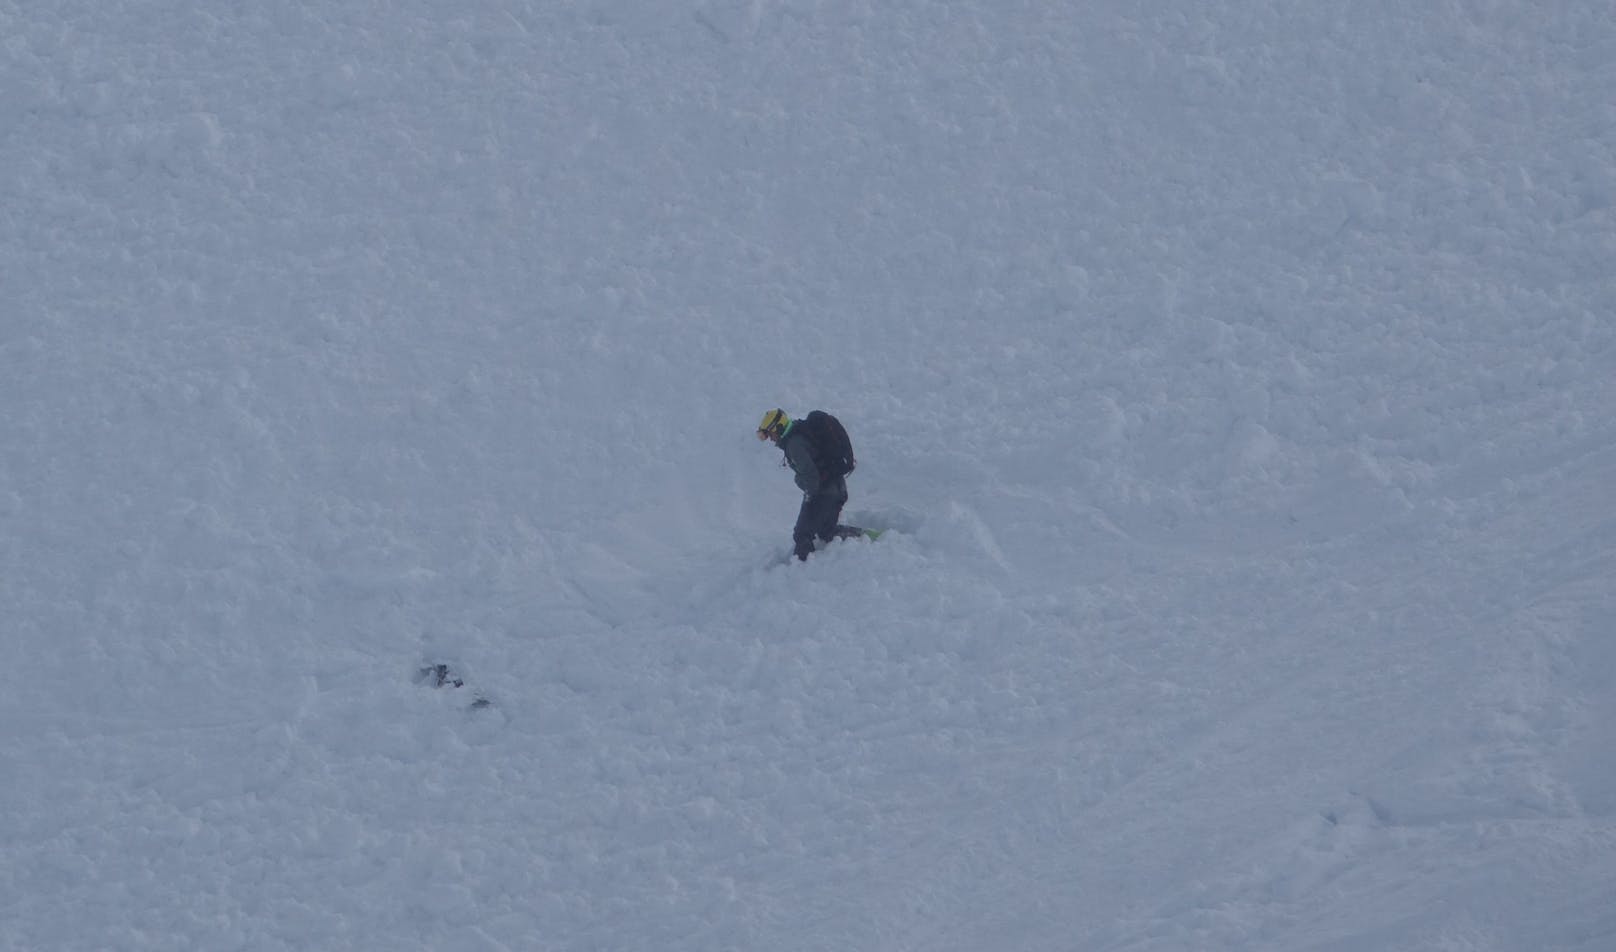 Ein 42-jähriger Skifahrer aus Polen fuhr kurz vor 11.00 Uhr im Gemeindegebiet von Hippach im Schigebiet Horberg mit seinen Schiern in den freien und ungesicherten Schiraum ein. Einige Meter unterhalb der Einfahrt löste sich ein Schneebrett mit einer Anrisshöhe von 50-60 cm.